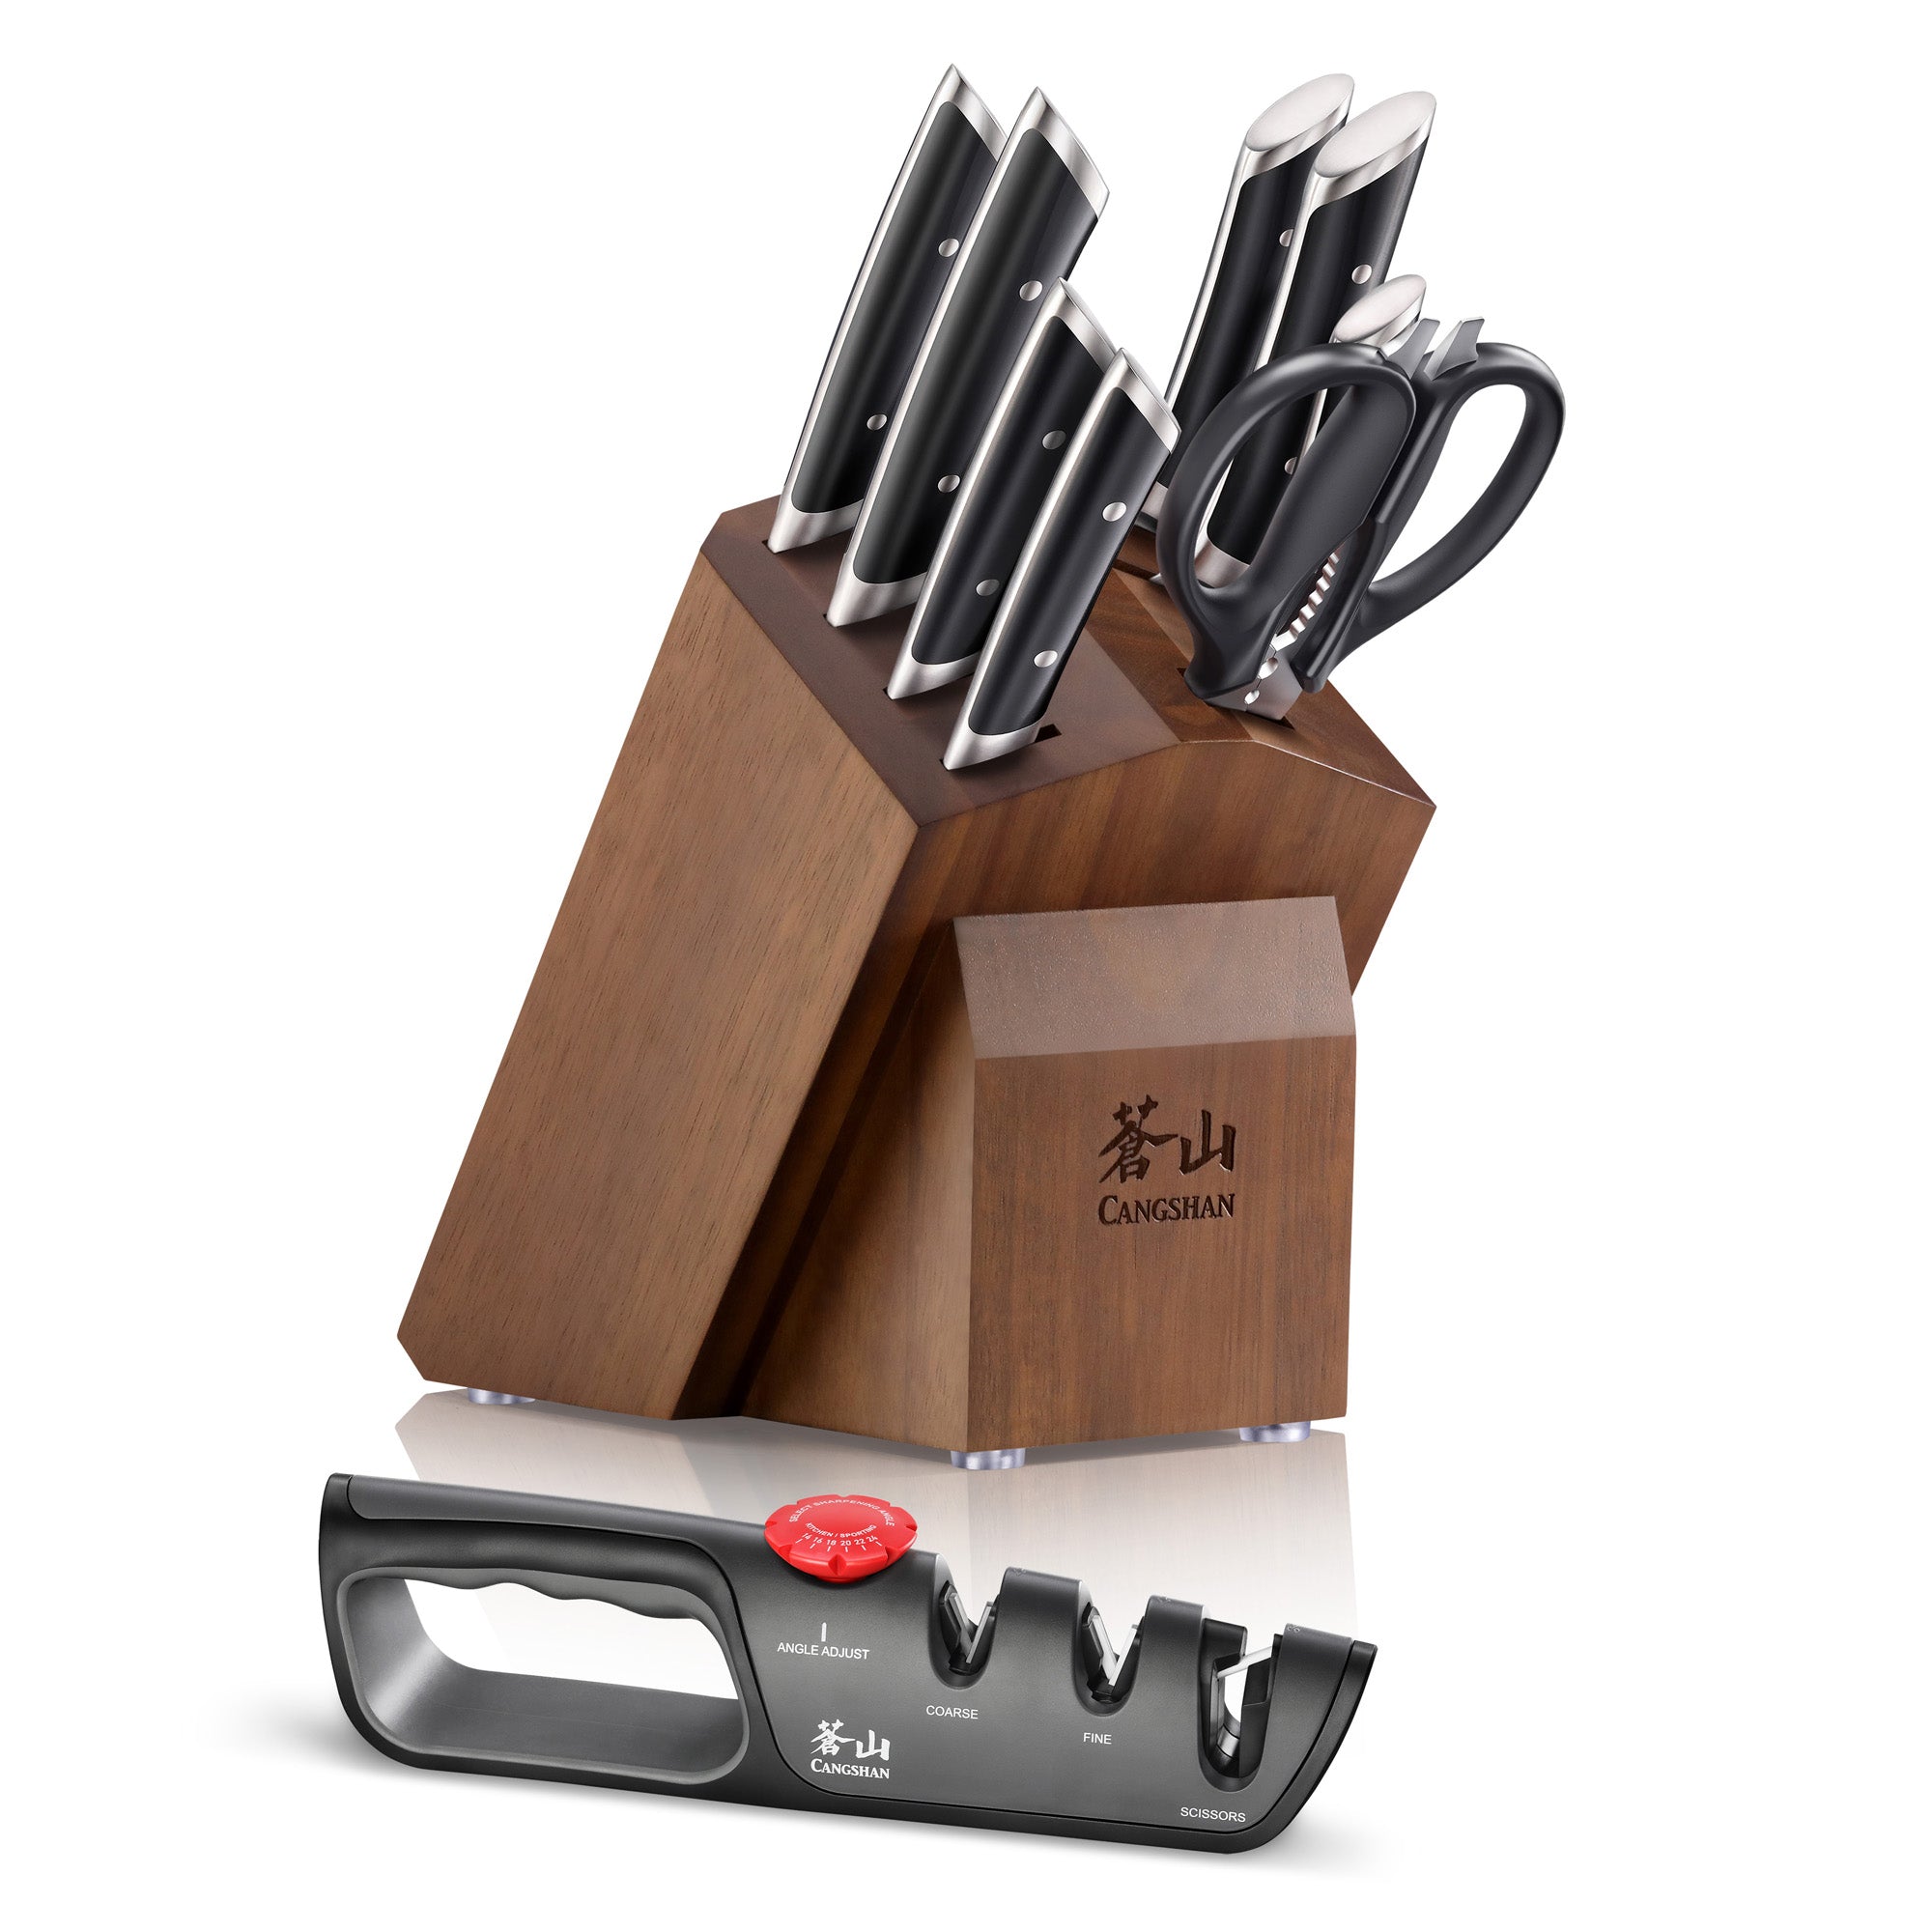 Cangshan HELENA Series German Steel 10-piece Knife Block Set, Black